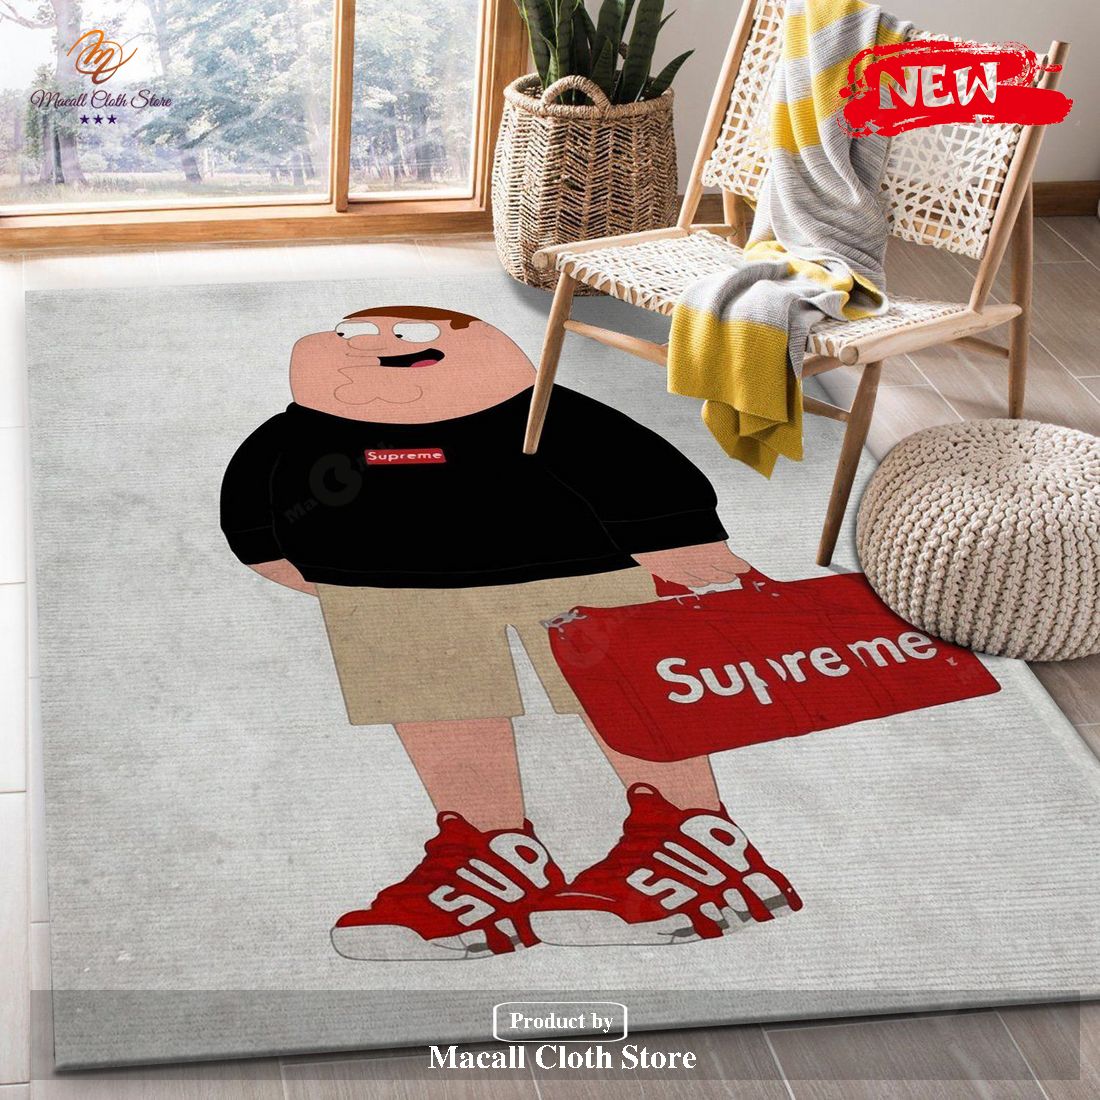 Supreme Peter Family Guy Rug Fashion Brand Rug Home Decor Gift